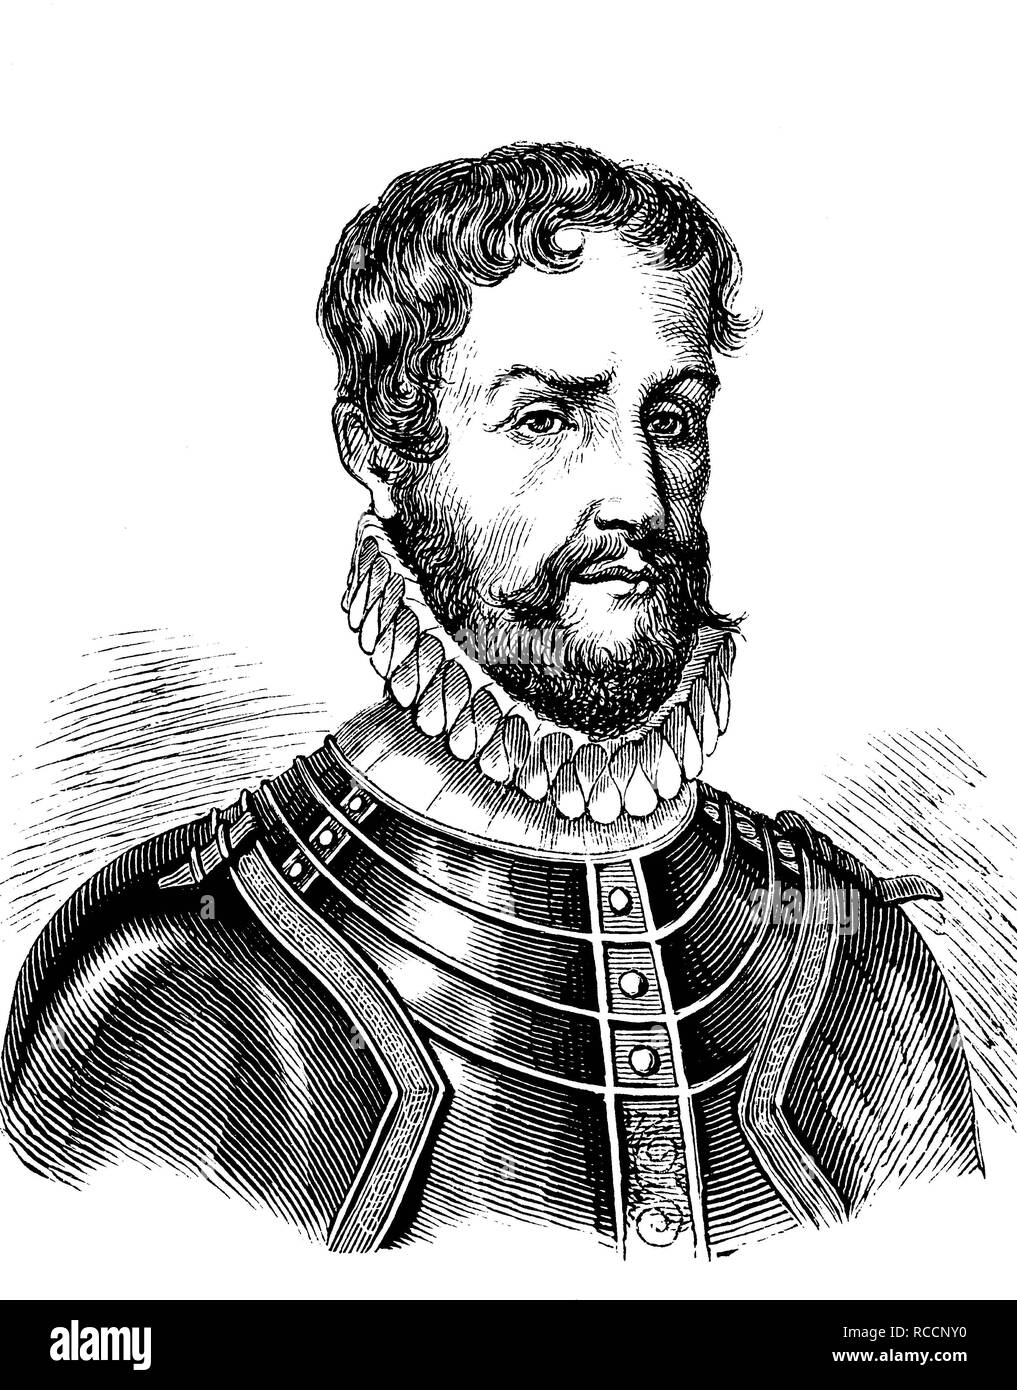 Pontus de la Gardie, Barone di Ekholmen, 1520 - 1585, un esercito svedese commander e governatore di Livonia, la storica incisione su legno Foto Stock